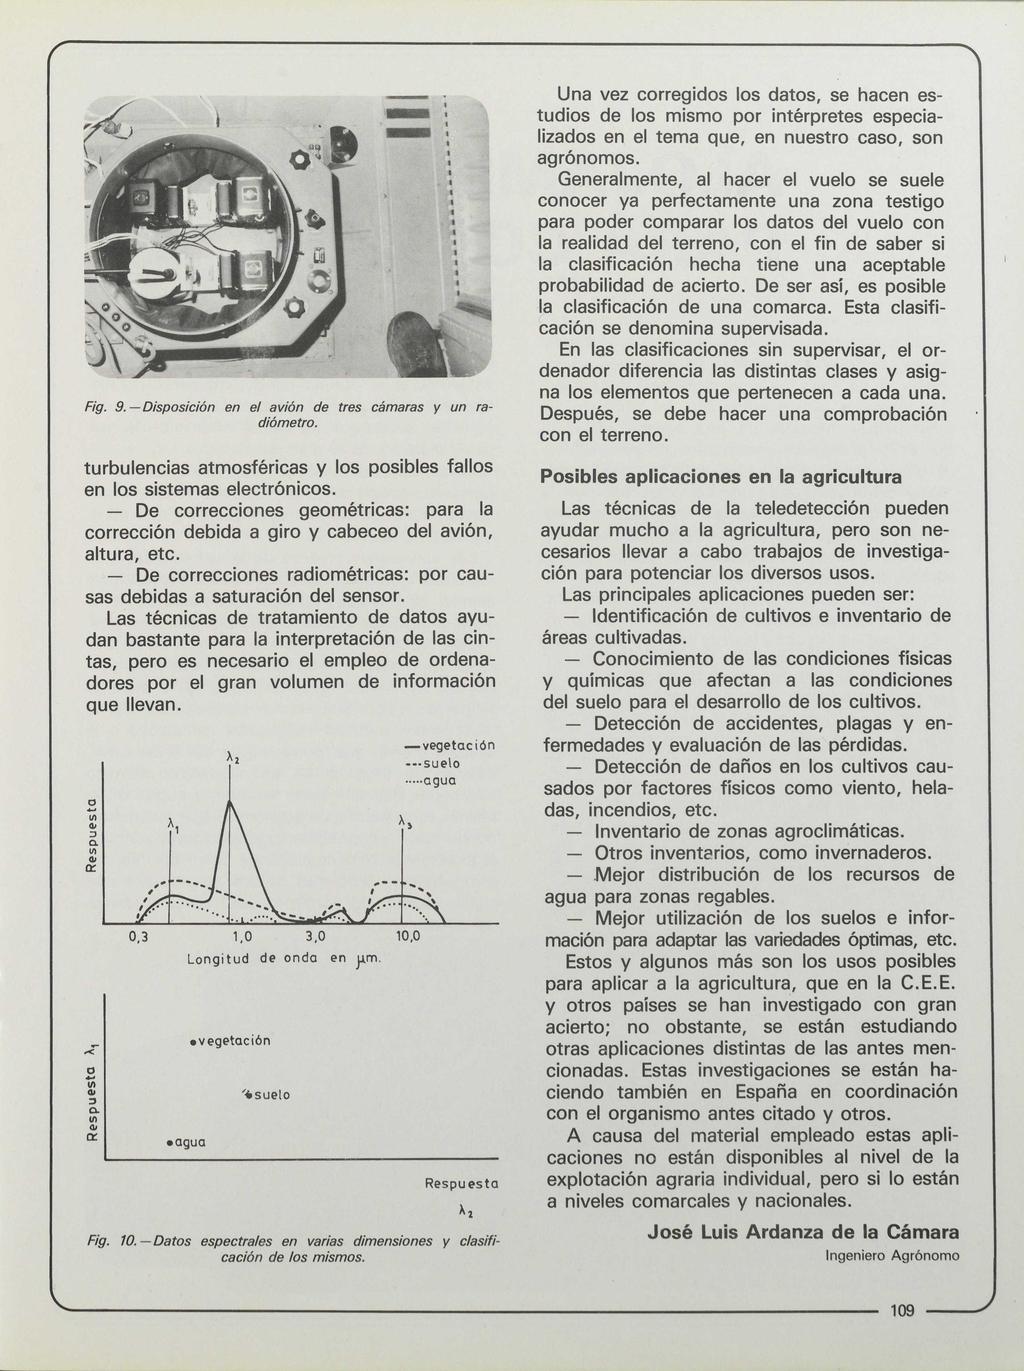 Fig. 9. Disposición en el avión de tres cámaras y un radiómetro. turbulencias atmosféricas y los posibles fallos en los sistemas electrónicos.